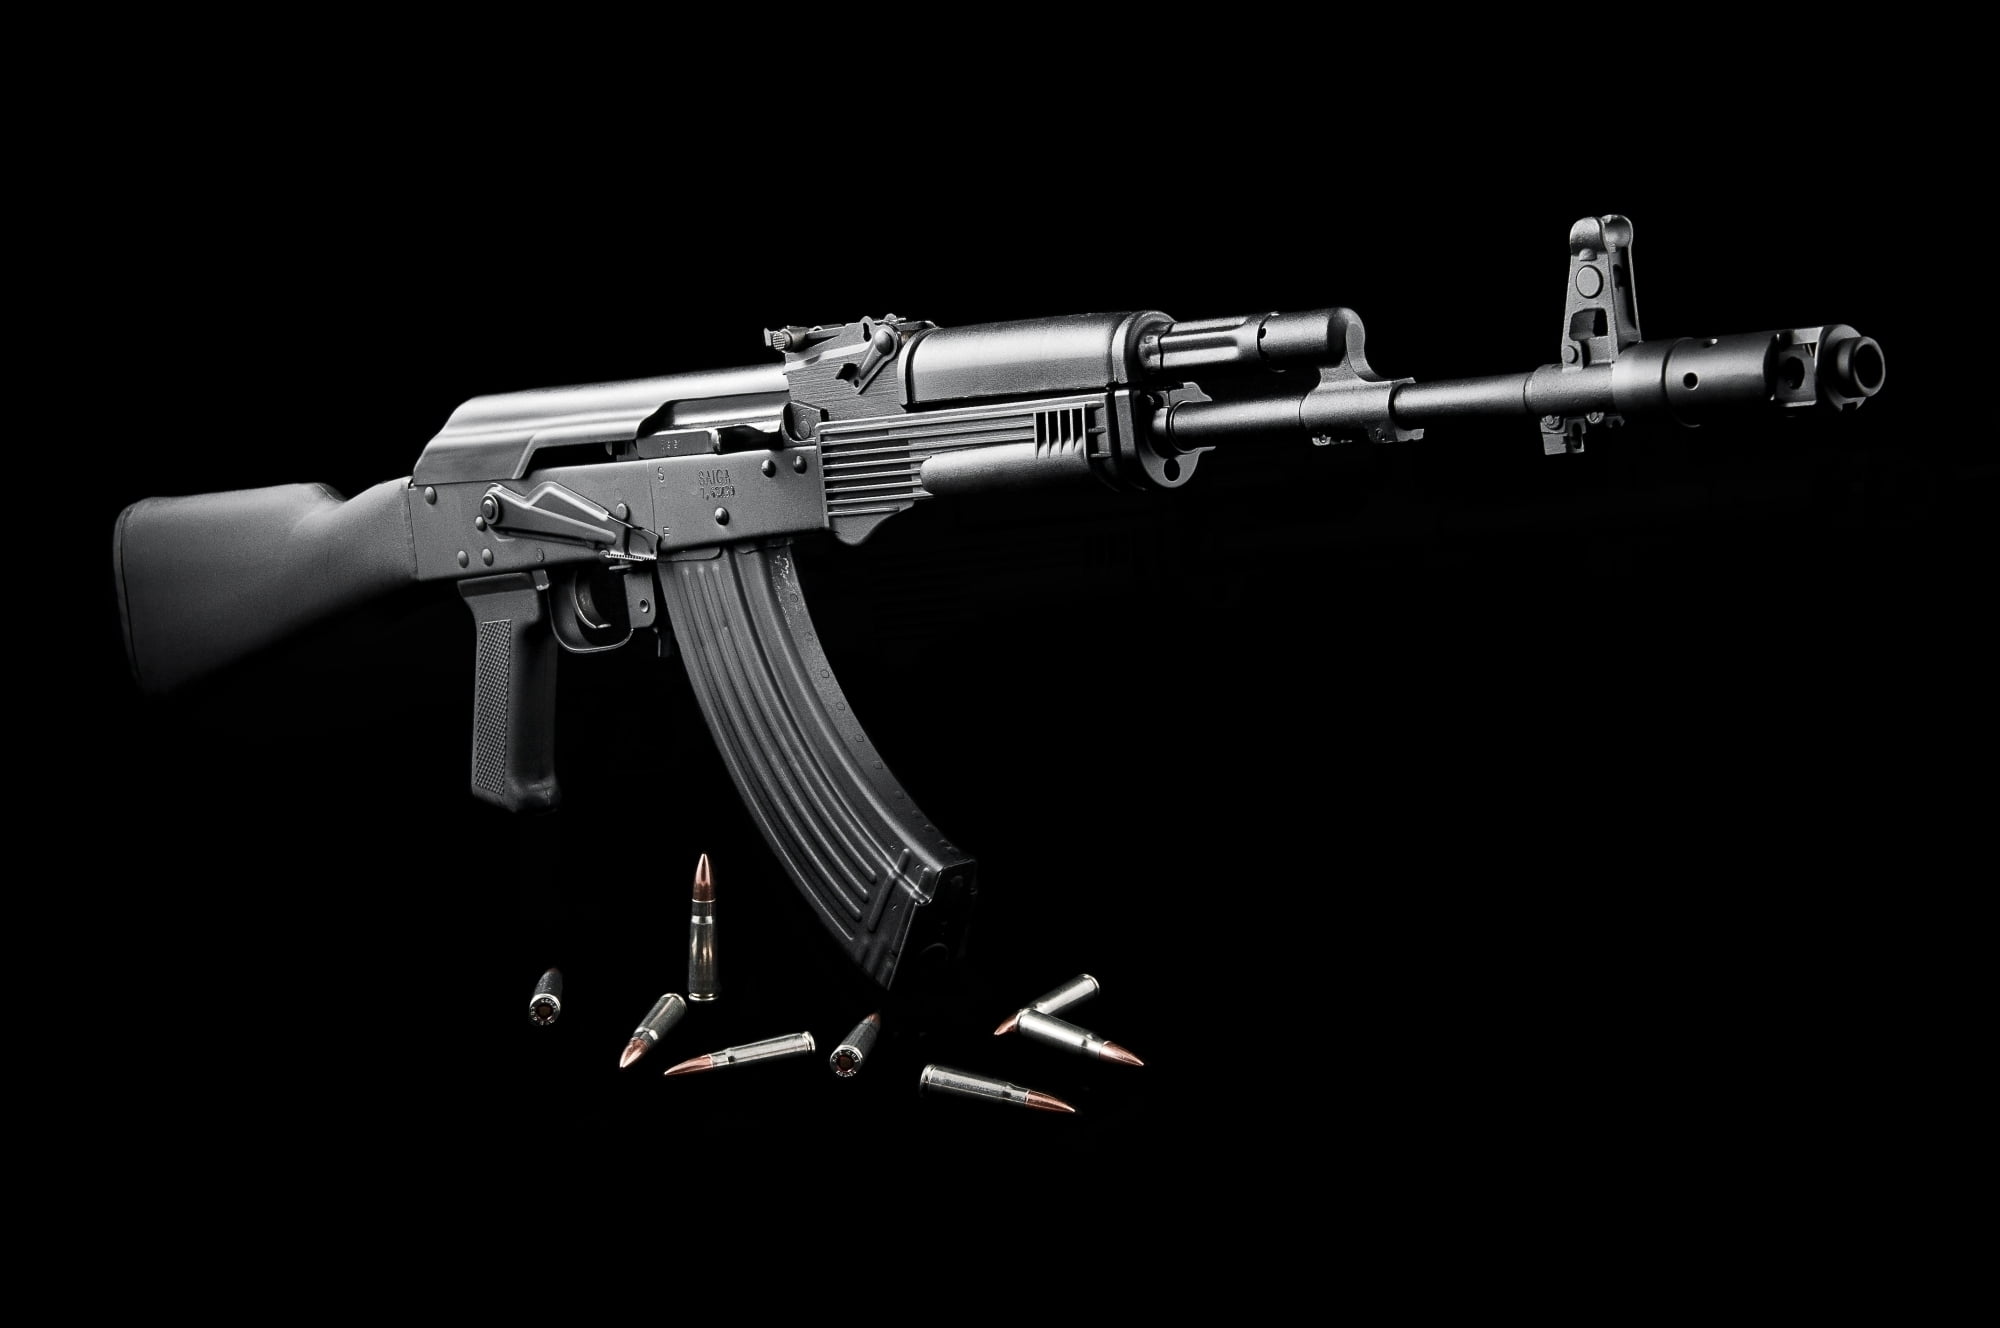 AK-47, brown, black, 3D, resolution 1920x1200: Bạn đang muốn tìm kiếm một hình nền đẹp và sắc nét với một chiếc súng AK-47? Hãy xem ảnh với màu sắc nâu, đen và độ phân giải 1920x1200 này, được thiết kế bằng công nghệ 3D tiên tiến, chắc chắn sẽ khiến bạn hài lòng.